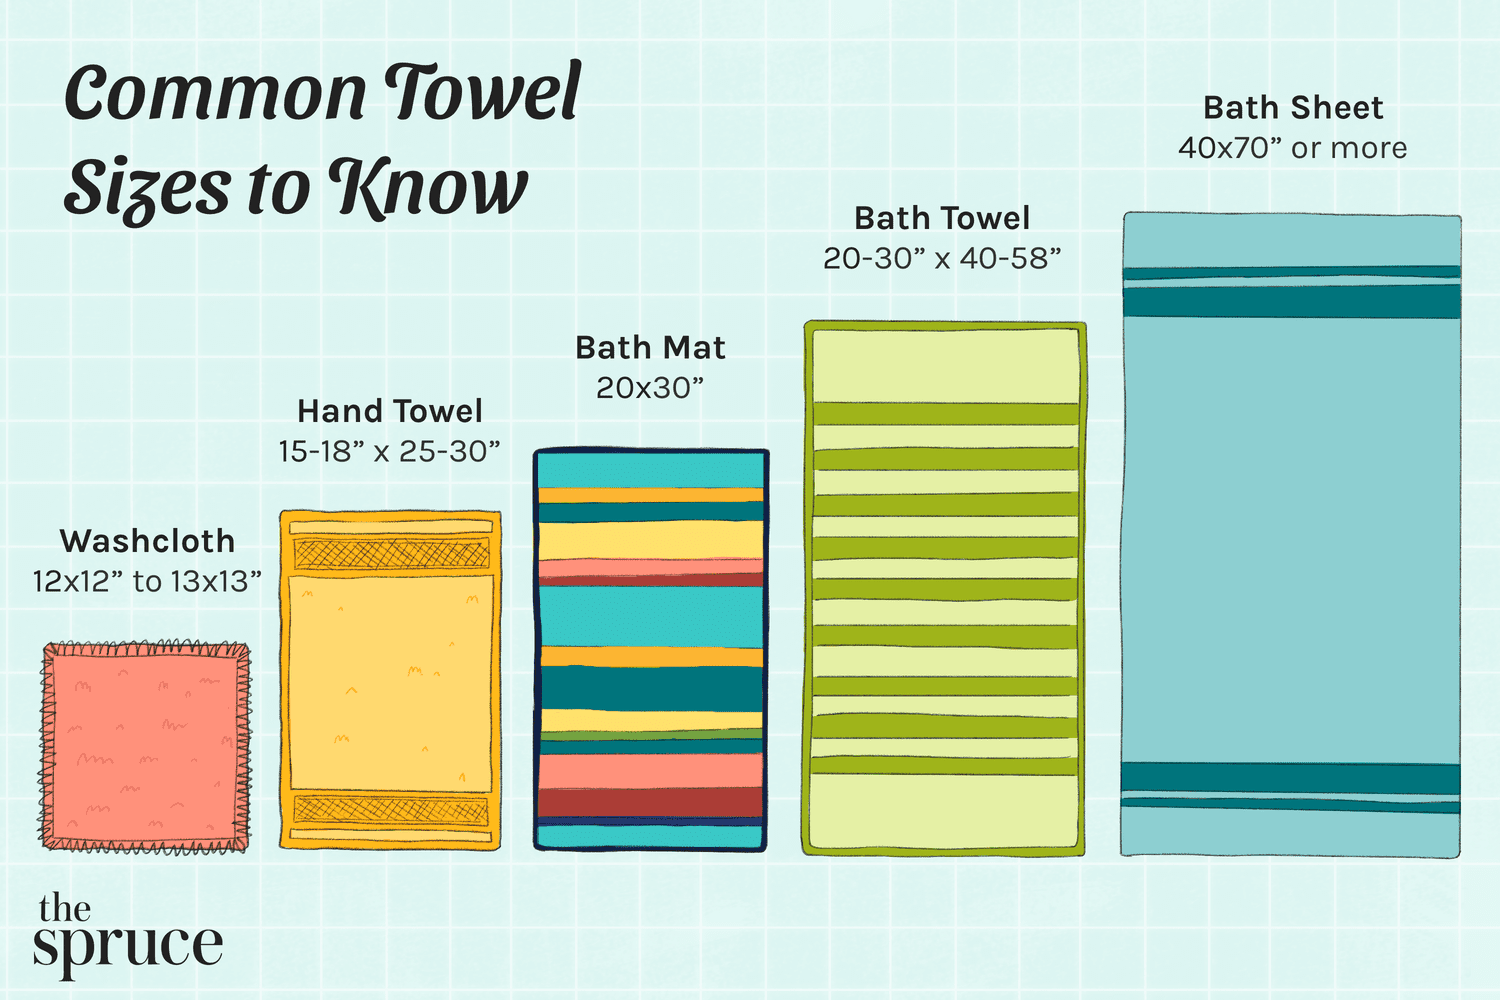 Tamaños comunes de toallas que debes conocer